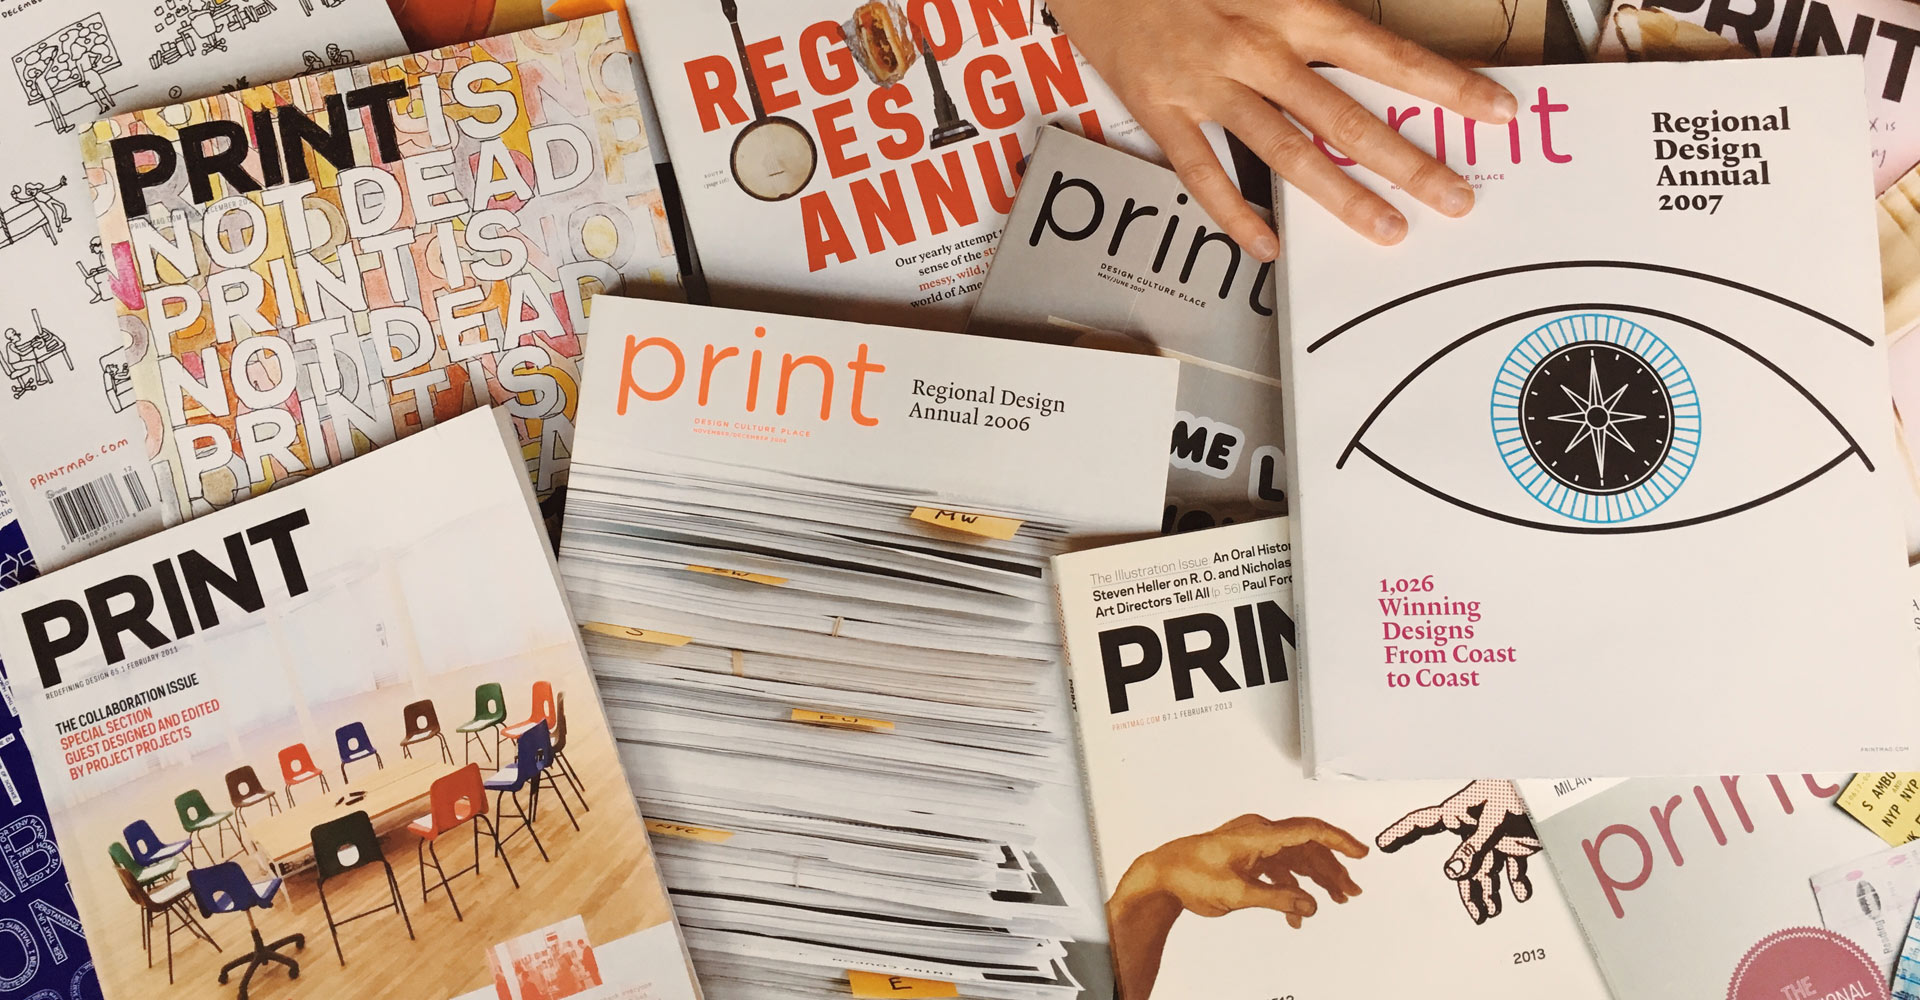 Print Magazine's Regional Design Annual